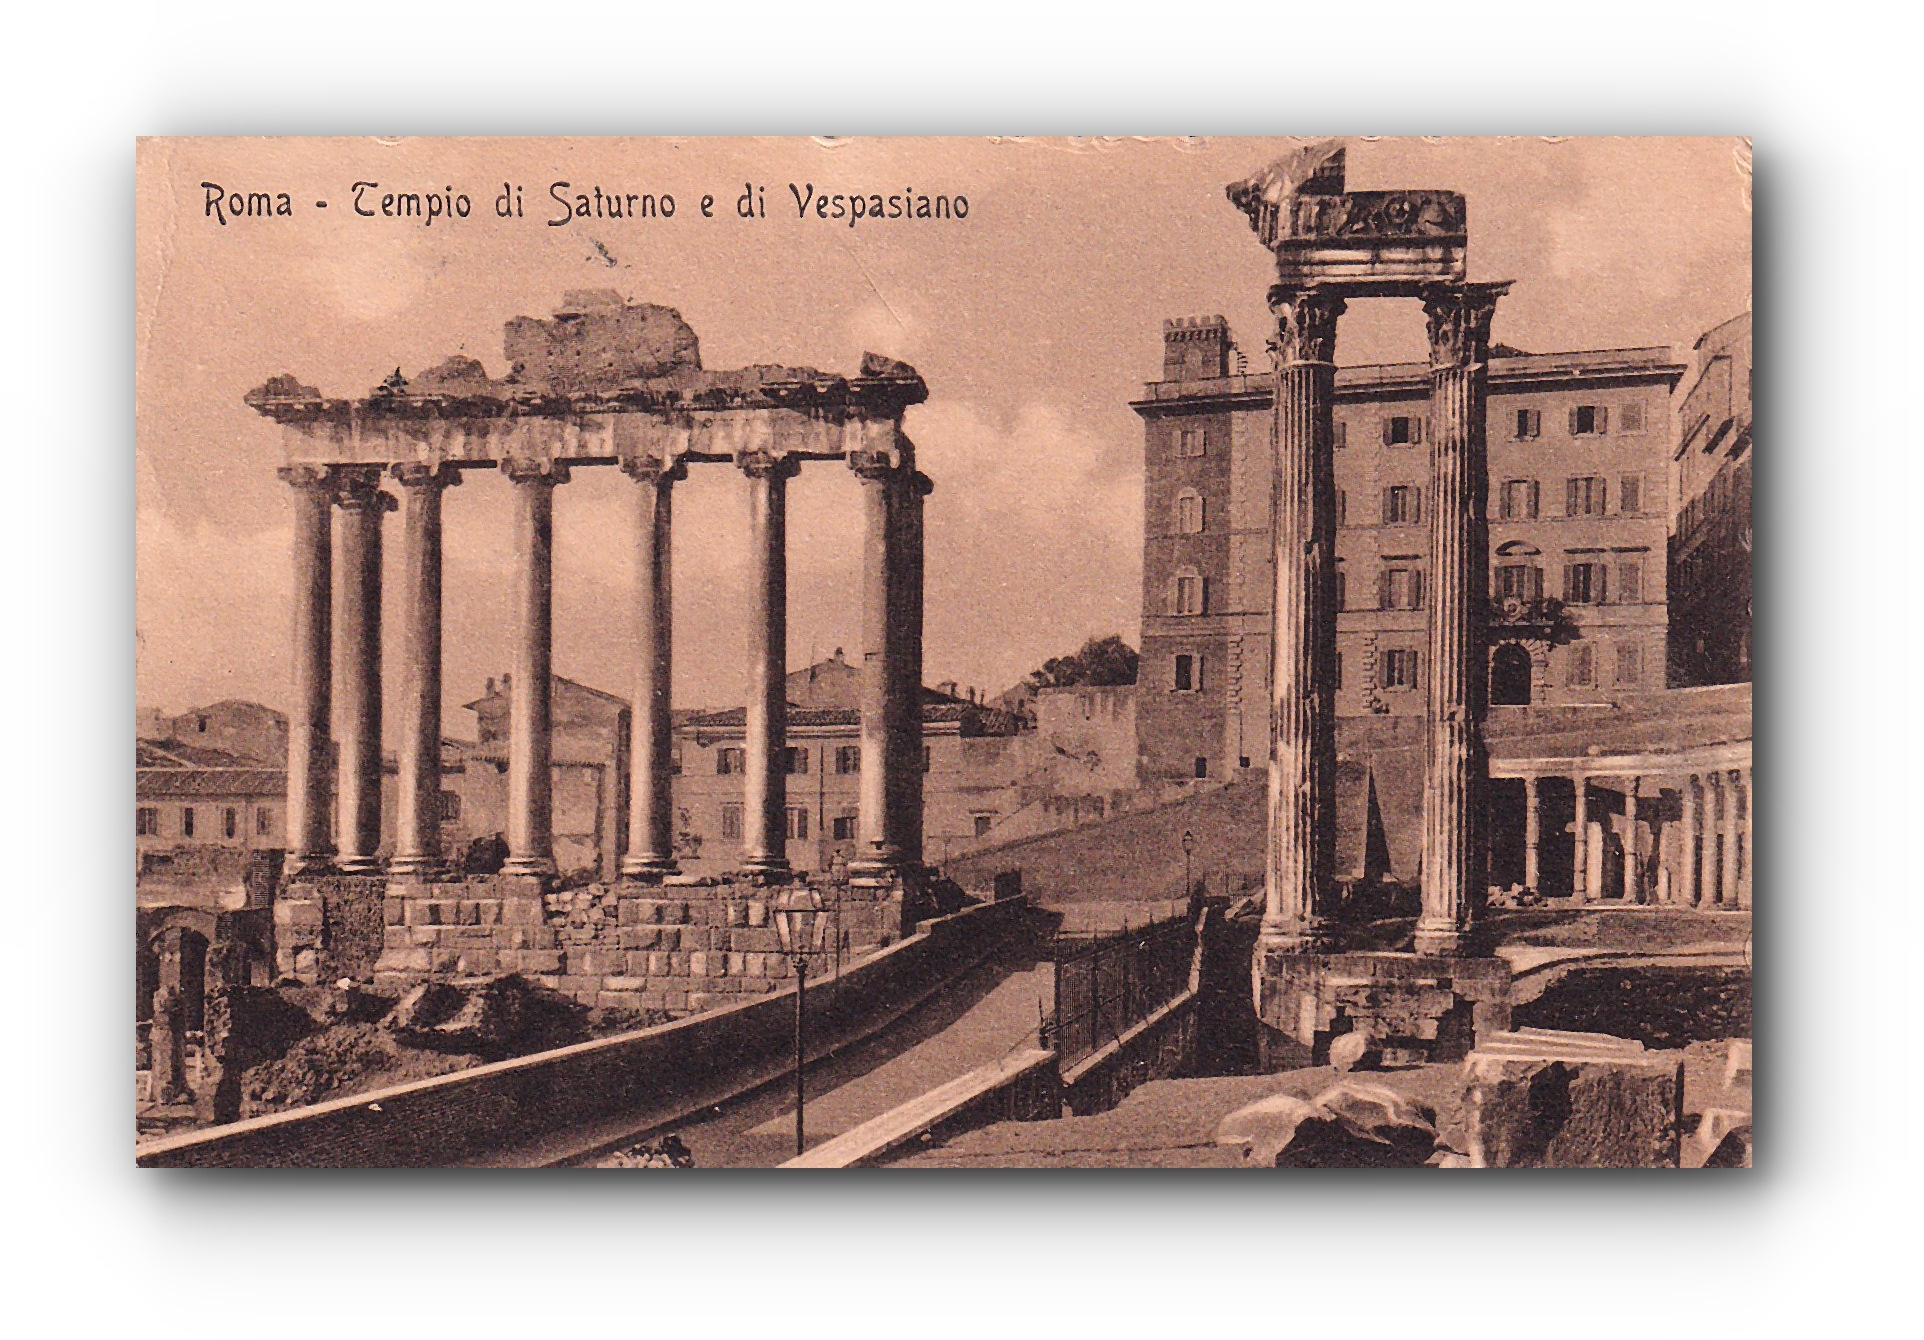 - Tempio di Saturno e di Vespasiano - ROMA -